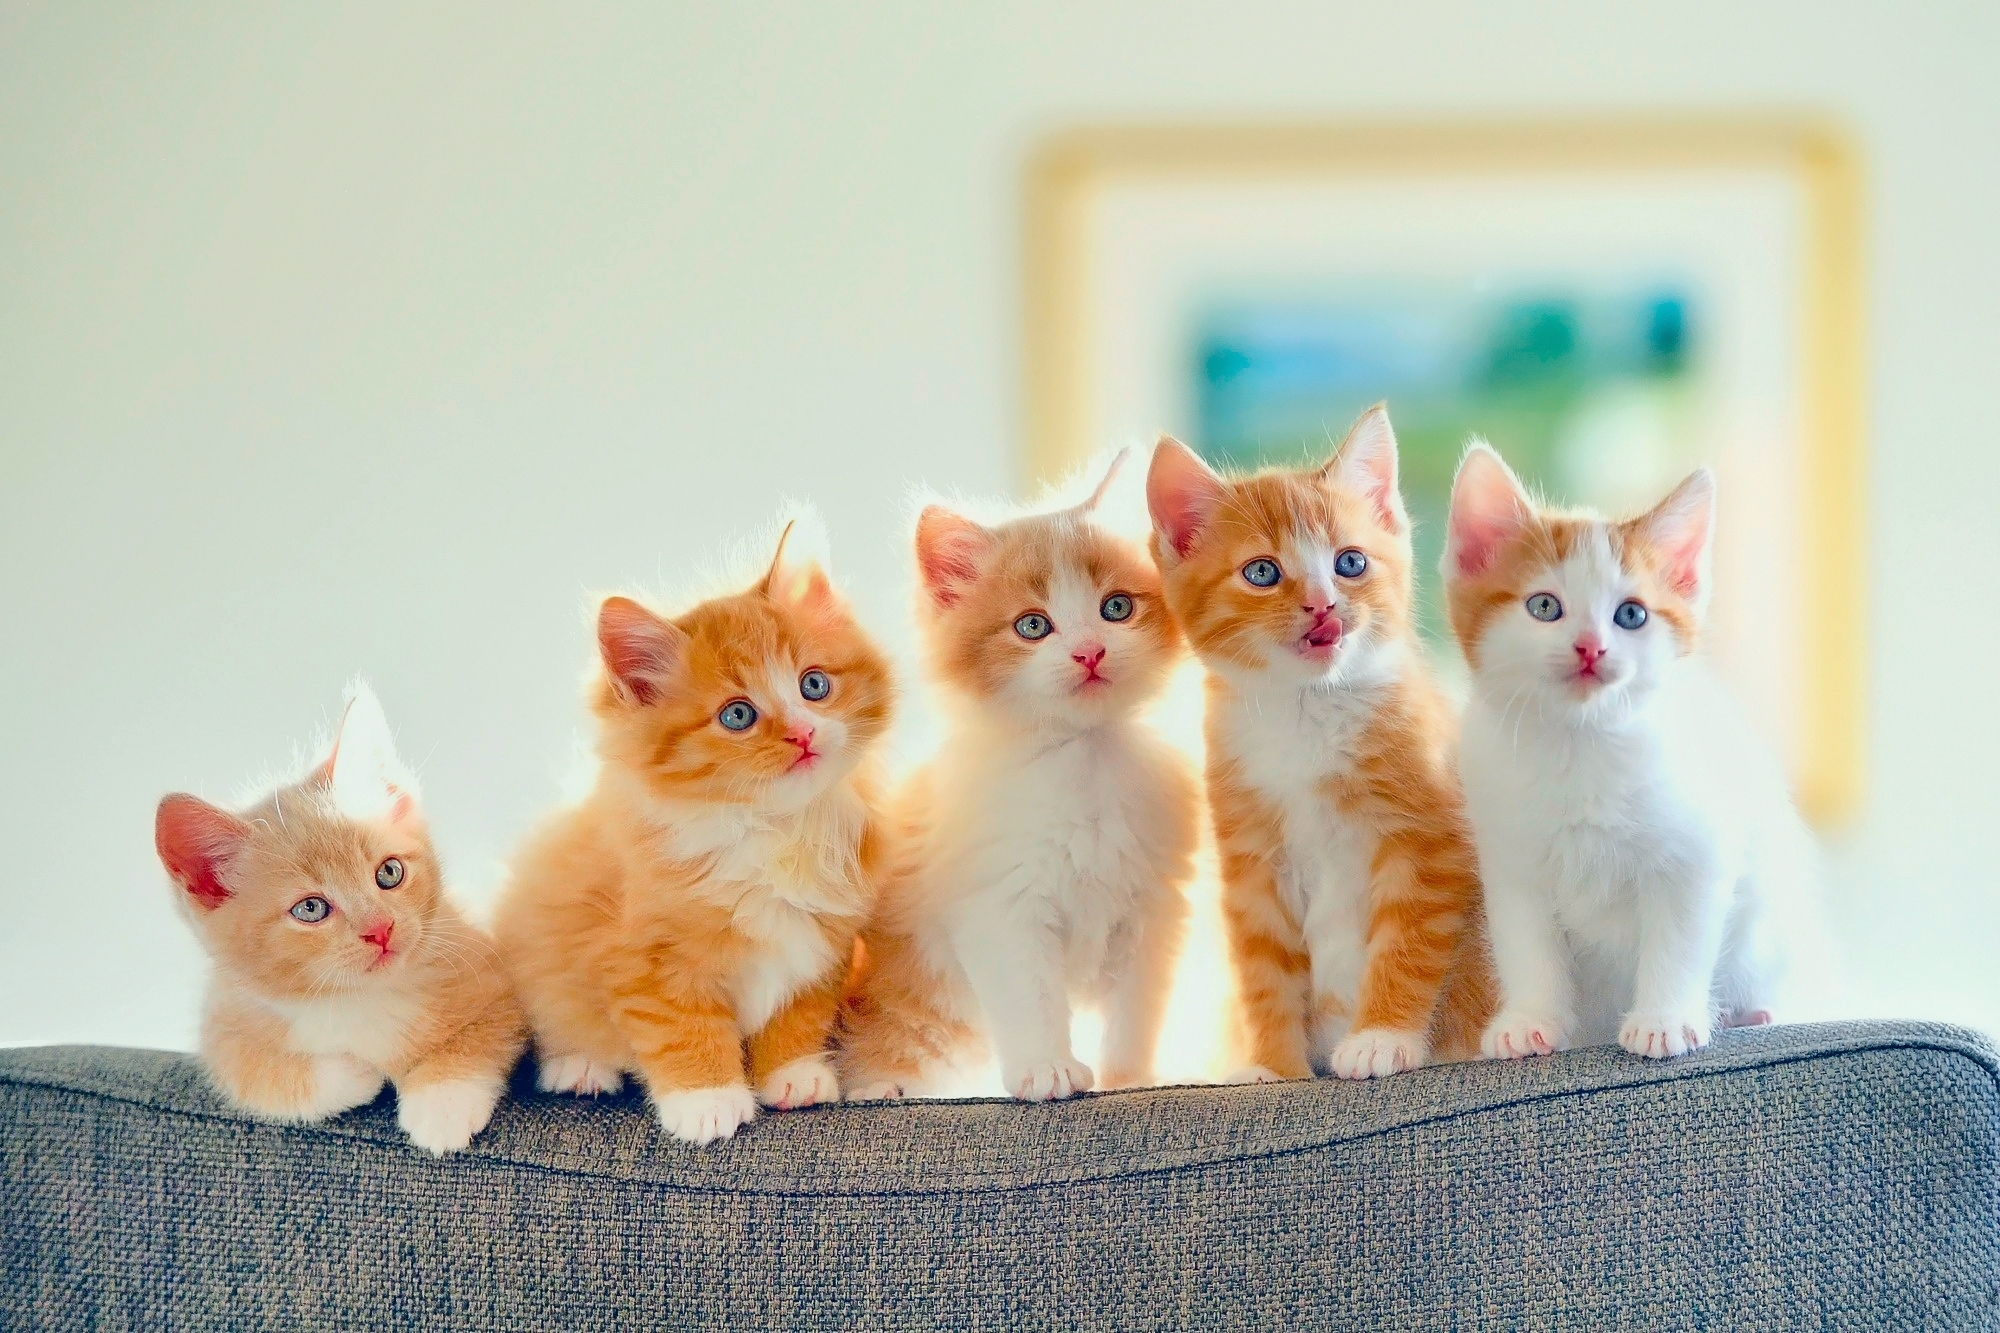 Cute Kittens Wallpaper Baby Cute Cat